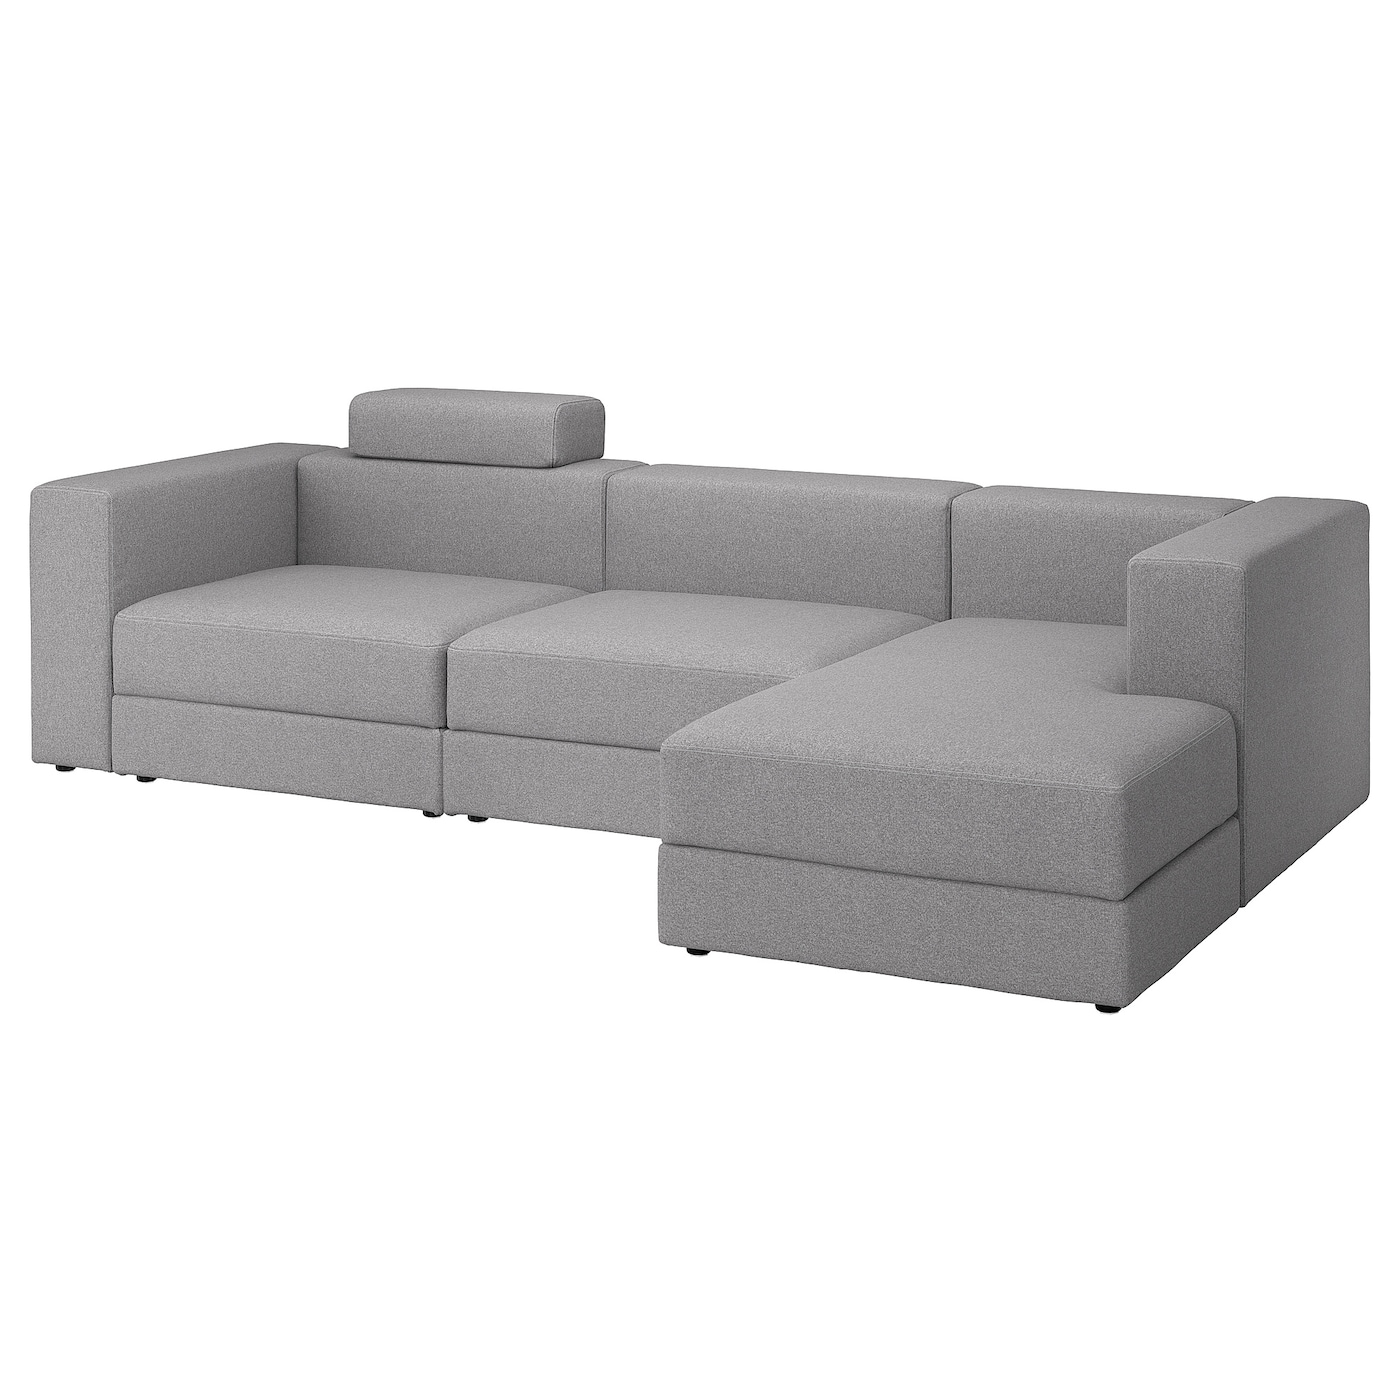 ДЖЭТТЕБО 4-местный диван + диван, правый с подголовником/Тонеруд серый JÄTTEBO IKEA